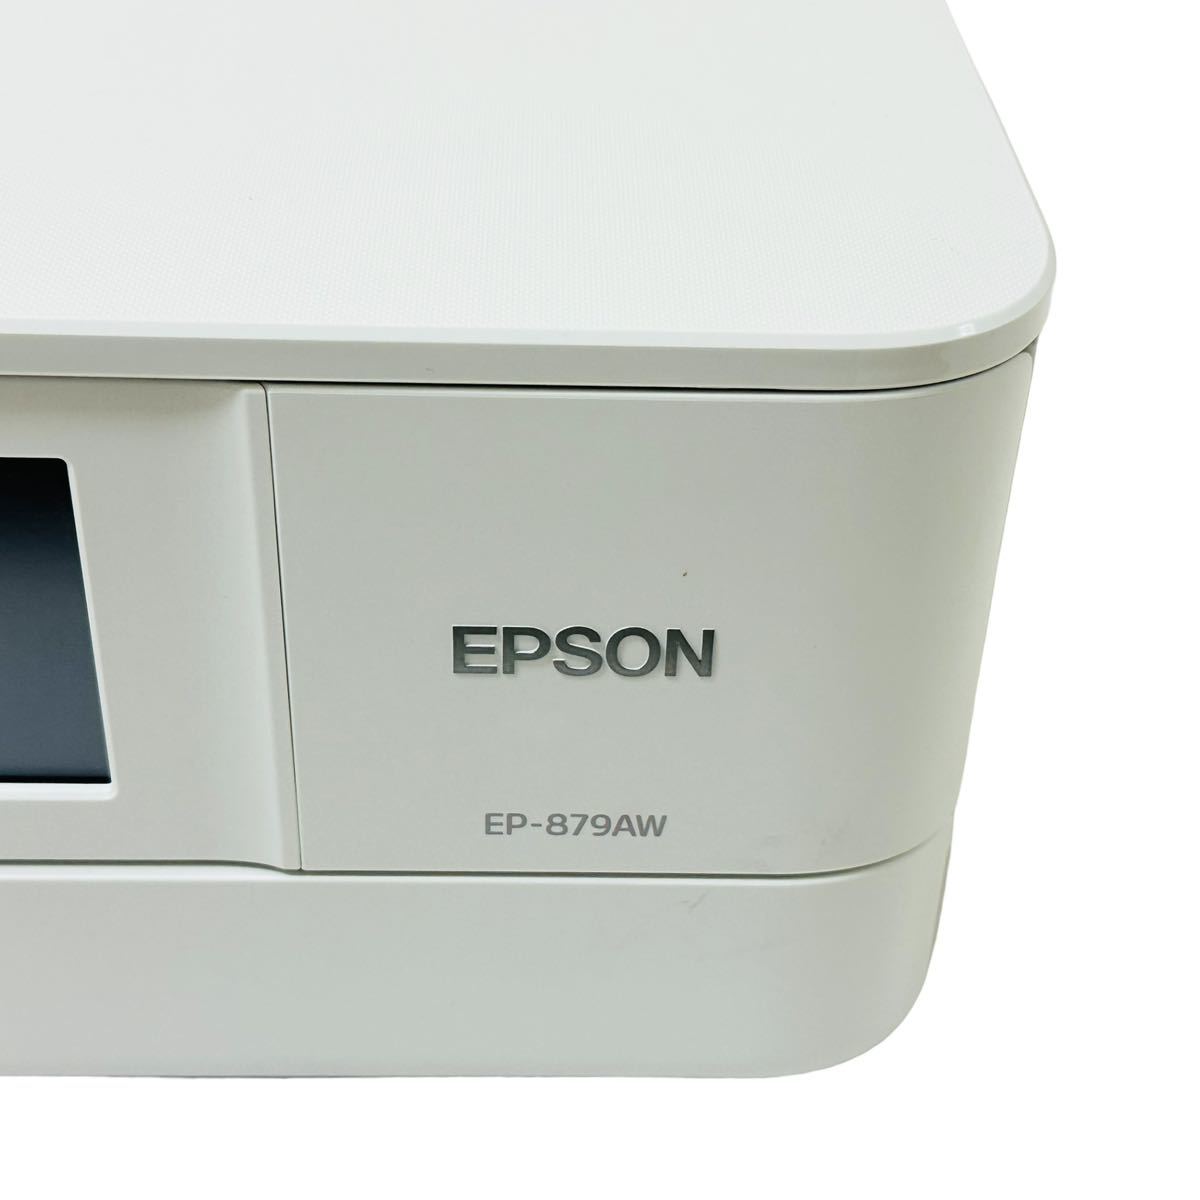 ★ 人気商品 ★ EPSON エプソン Colorio カラリオ インクジェット複合機 EP-879AW プリンター 複合機 インクジェットプリンター EP-879A_画像8